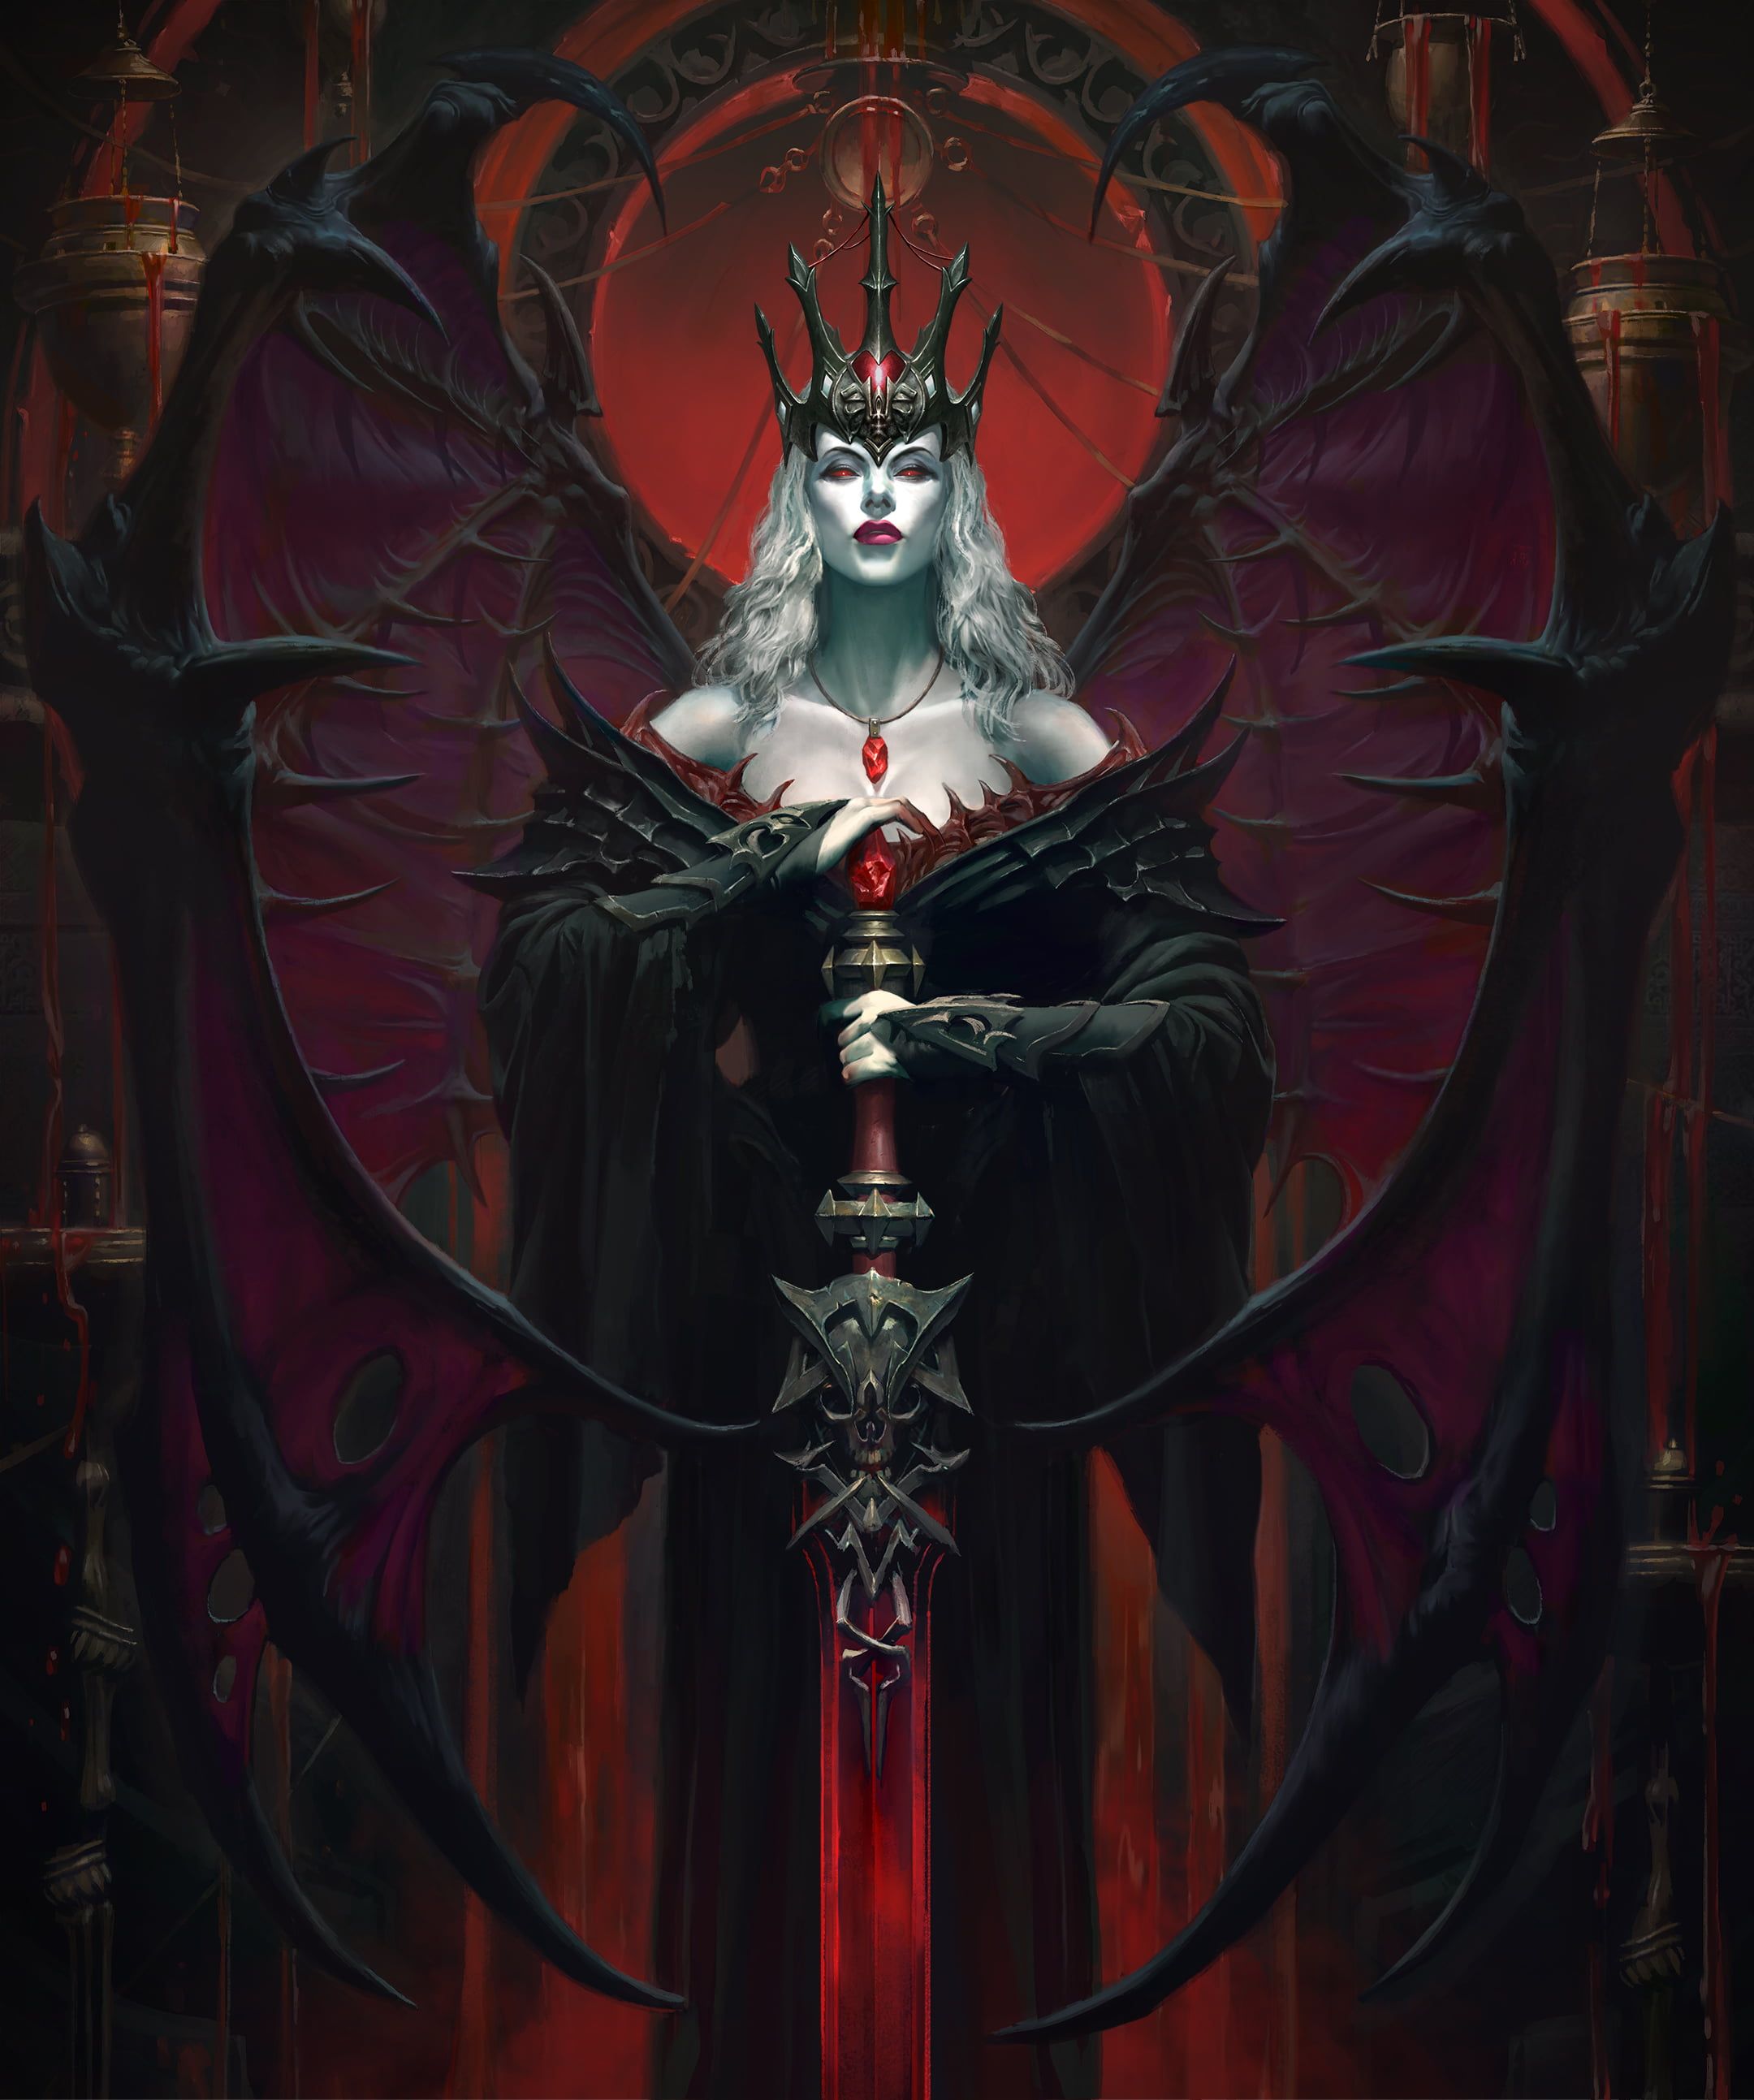 Diablo Diablo Immortal Diablo 2 Diablo 3: Reaper of Souls diablo 4 diablo iv K #wallpaper #hdwallpaper #desktop. Vampire art, Demon art, Dark fantasy art